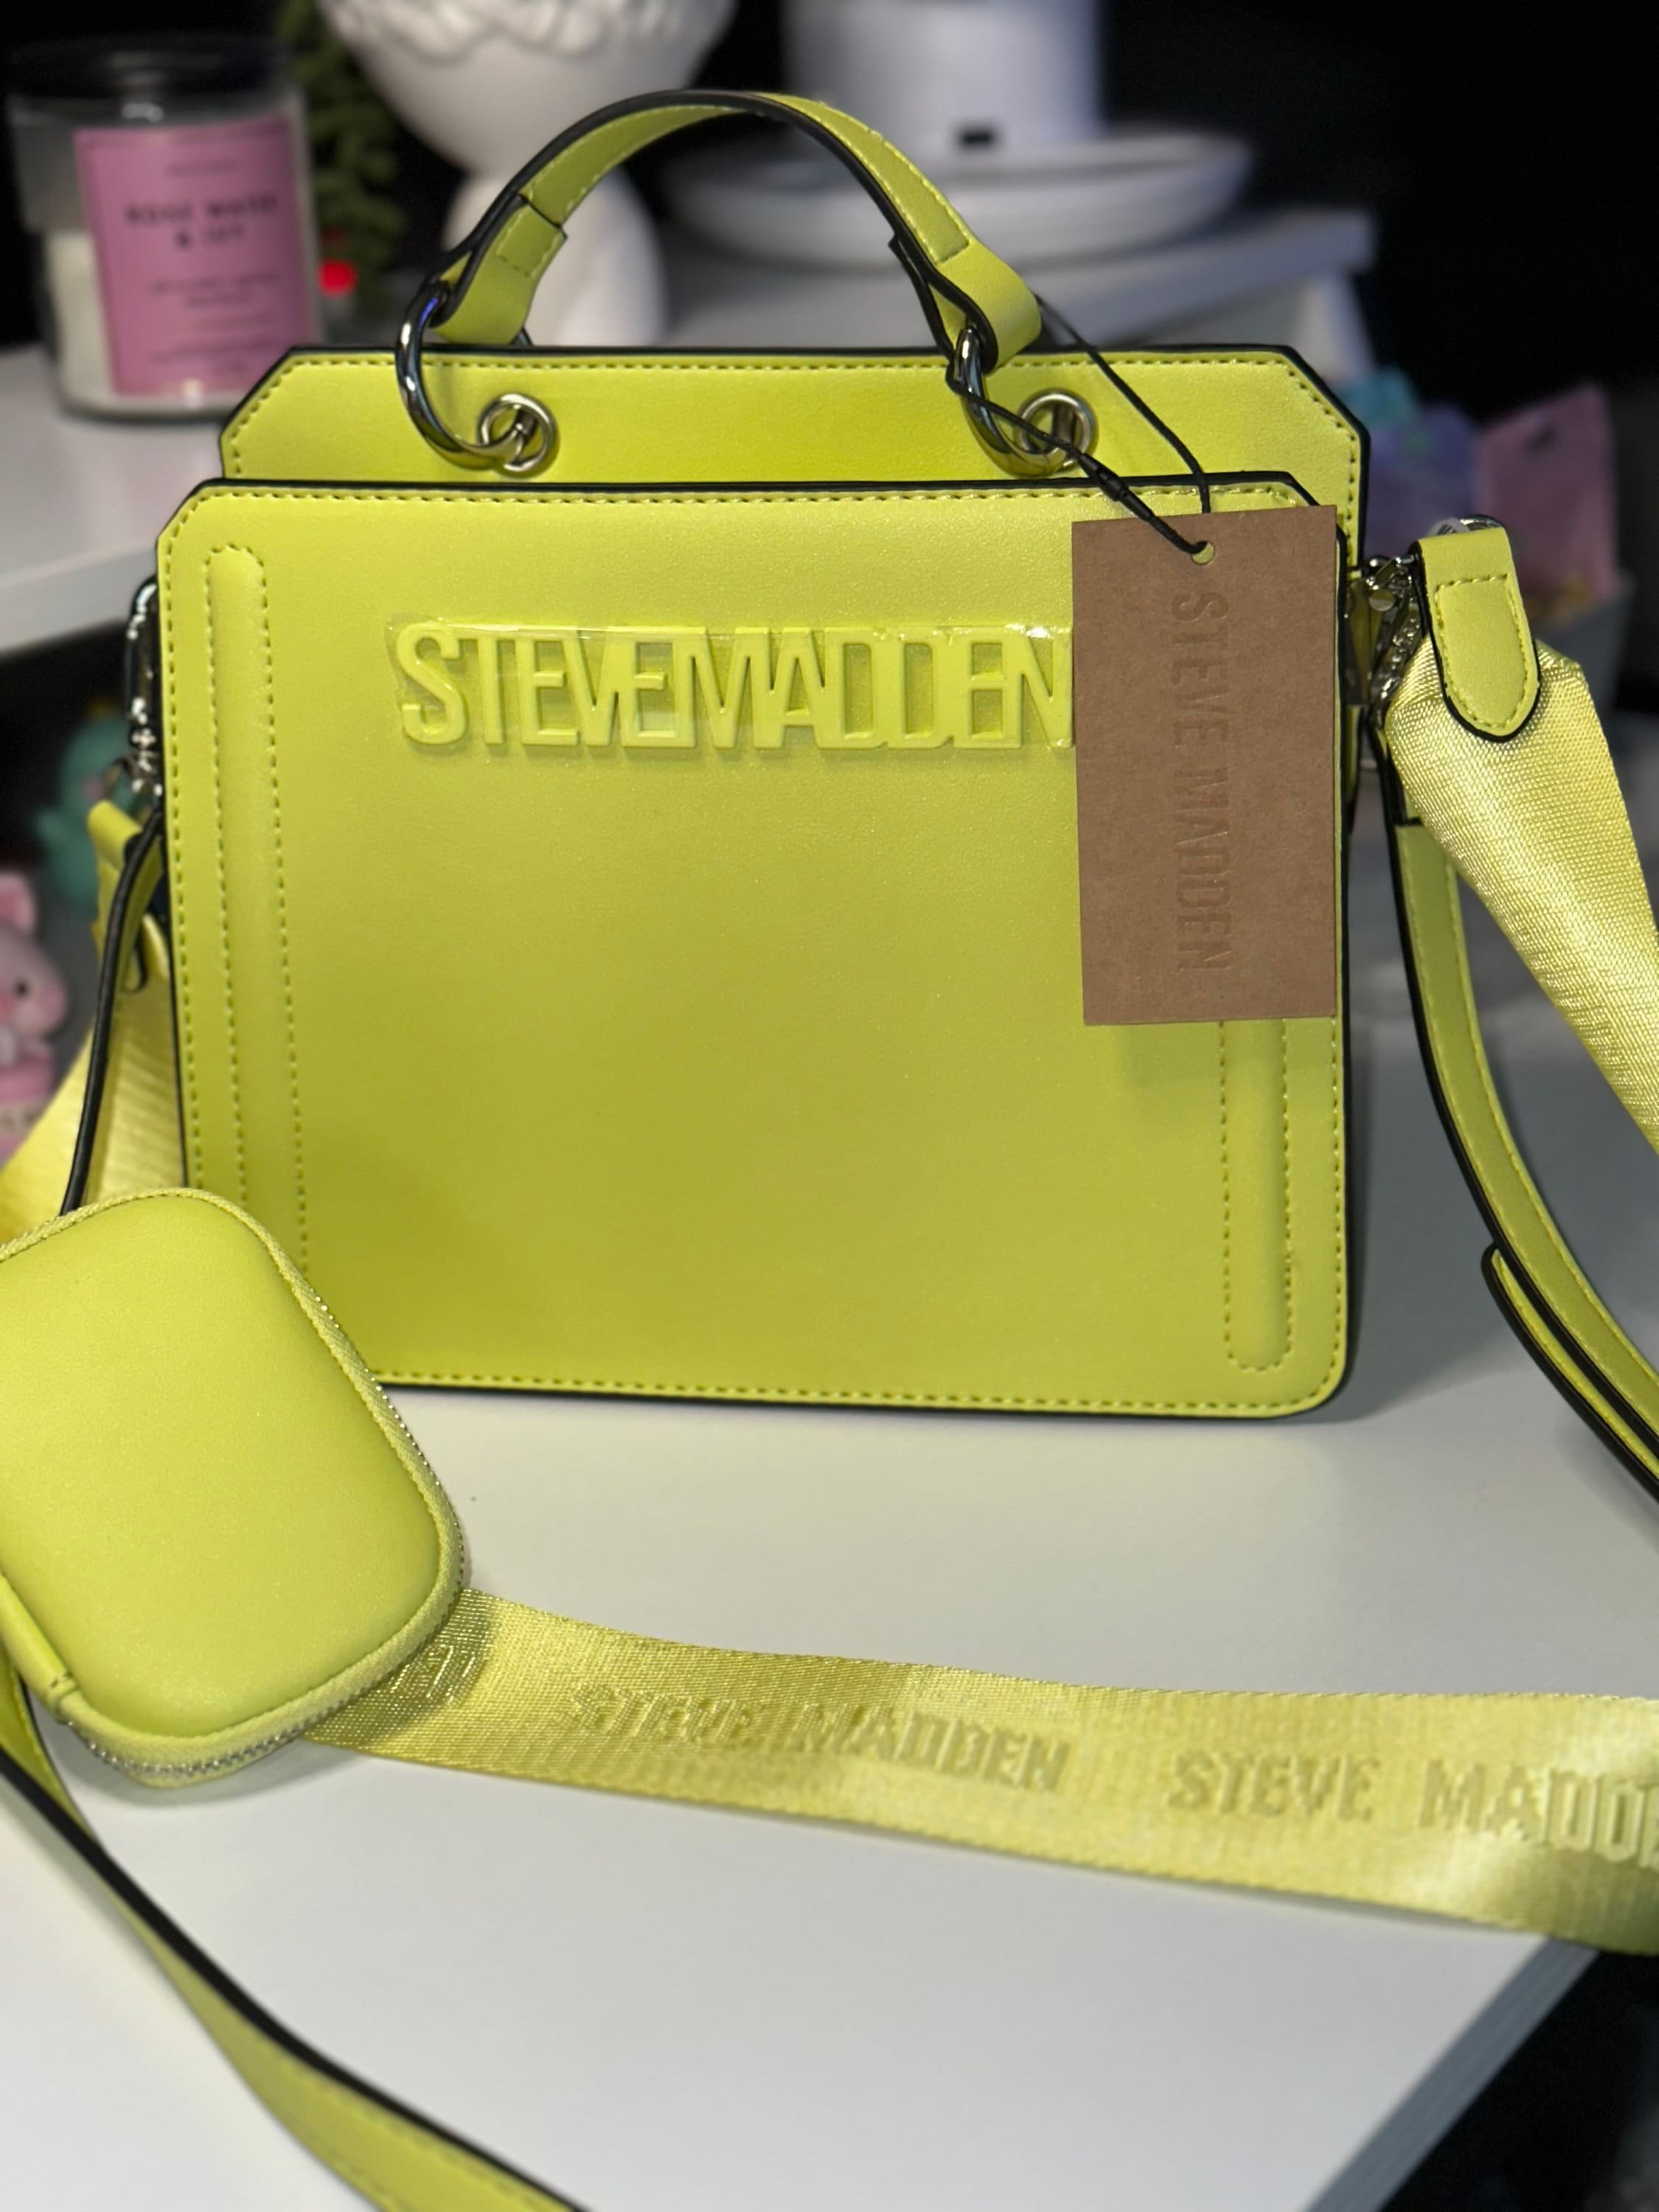 Steve Madden Handbags & Purses for Women